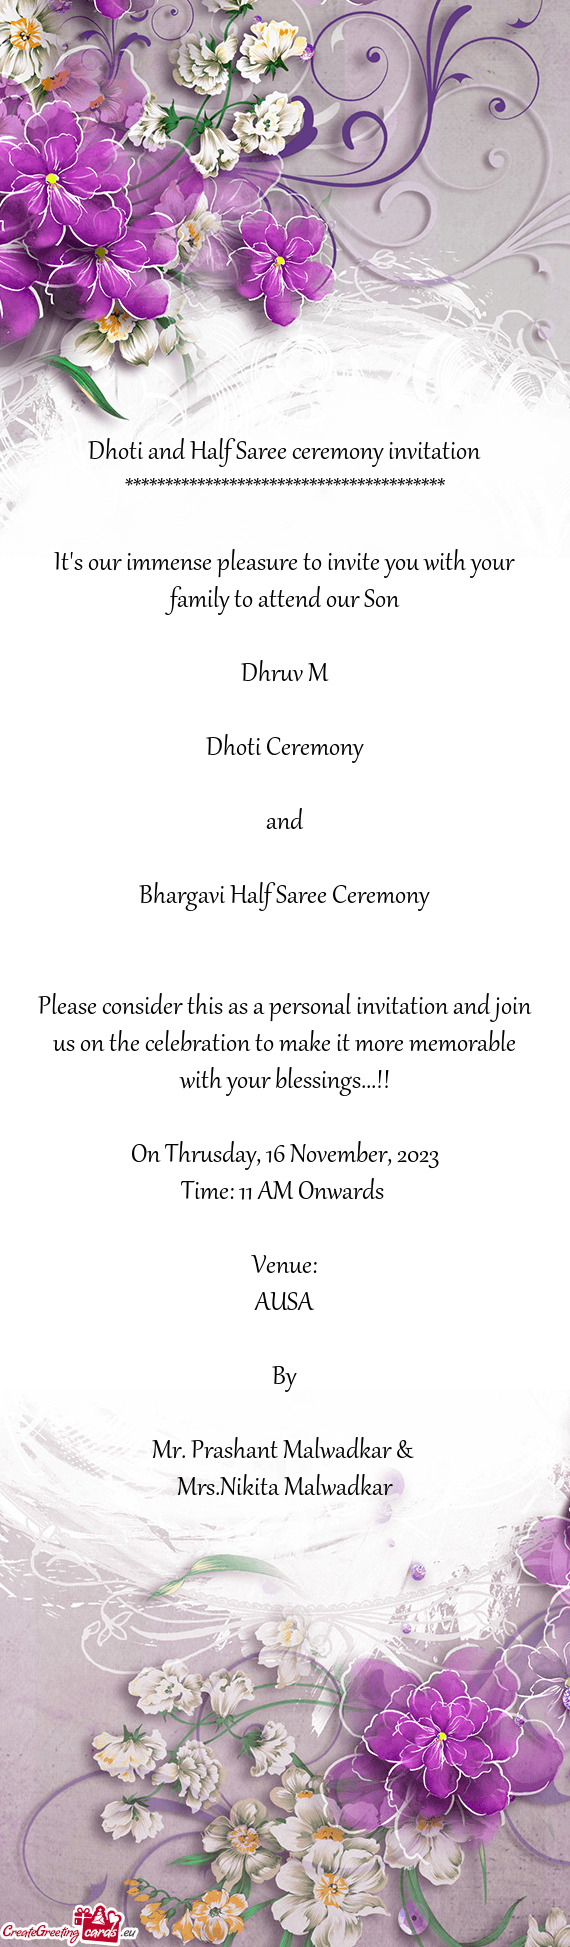 Bhargavi Half Saree Ceremony